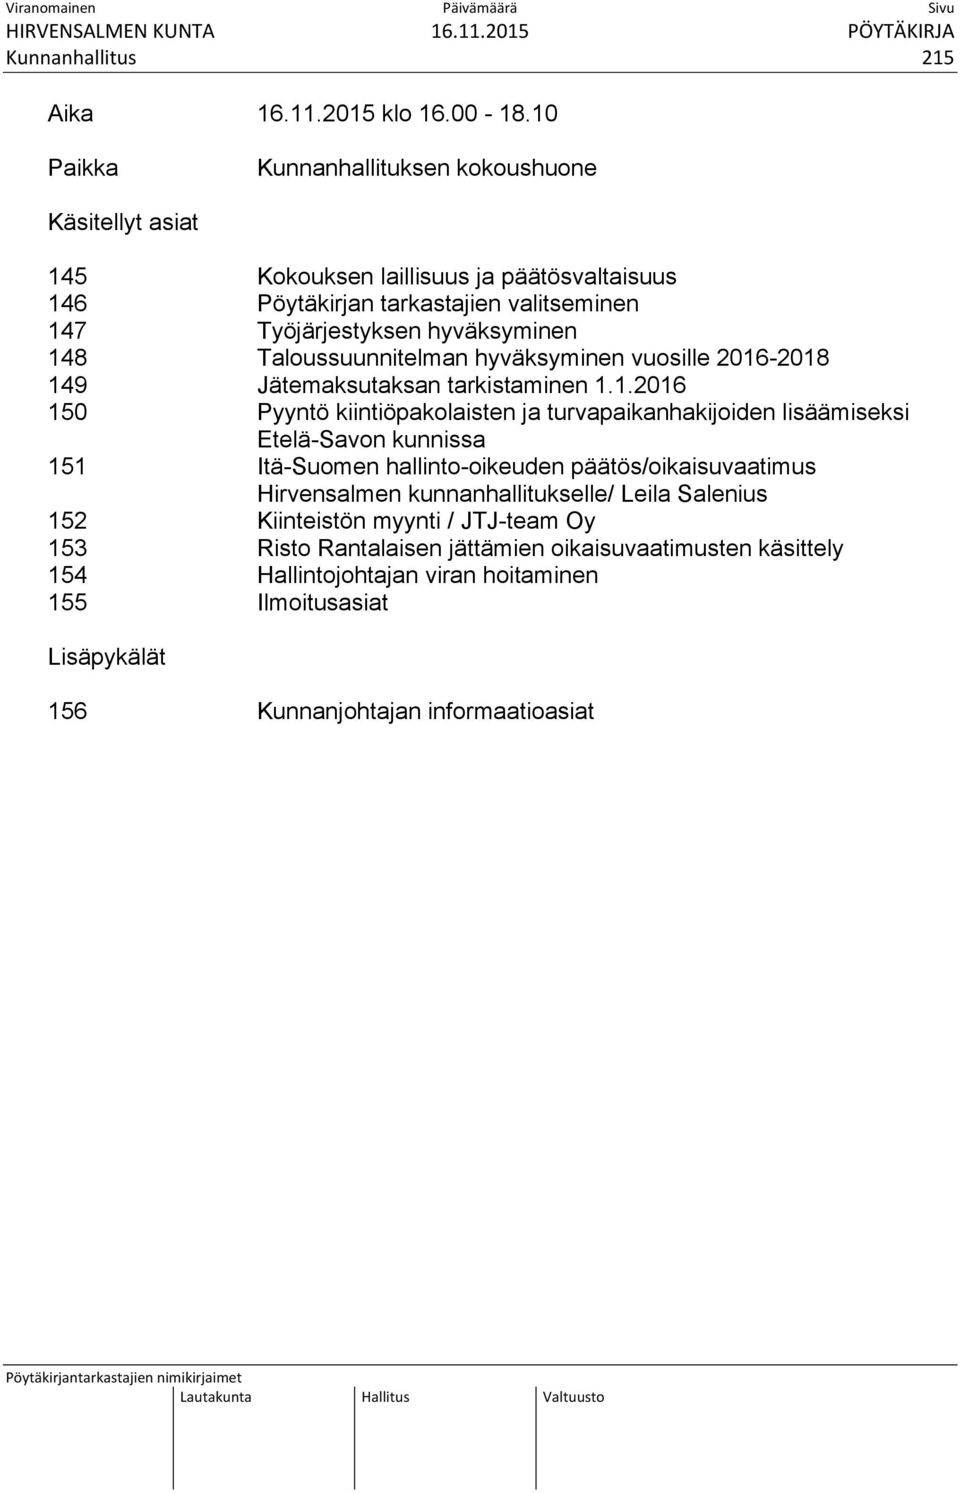 148 Taloussuunnitelman hyväksyminen vuosille 2016-2018 149 Jätemaksutaksan tarkistaminen 1.1.2016 150 Pyyntö kiintiöpakolaisten ja turvapaikanhakijoiden lisäämiseksi Etelä-Savon